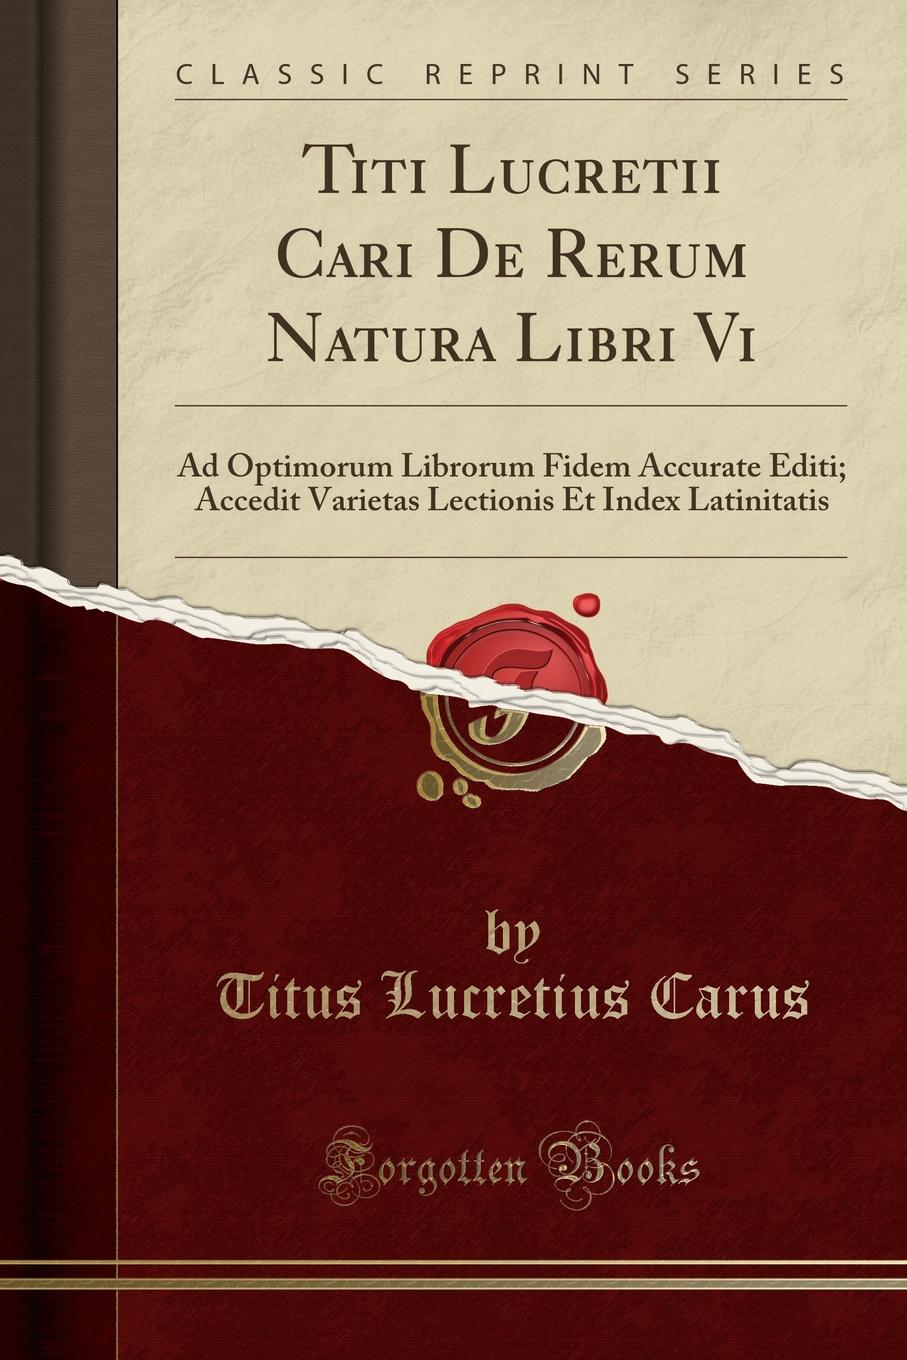 Titi Lucretii Cari De Rerum Natura Libri Vi. Ad Optimorum Librorum Fidem Accurate Editi; Accedit Varietas Lectionis Et Index Latinitatis (Classic Reprint)